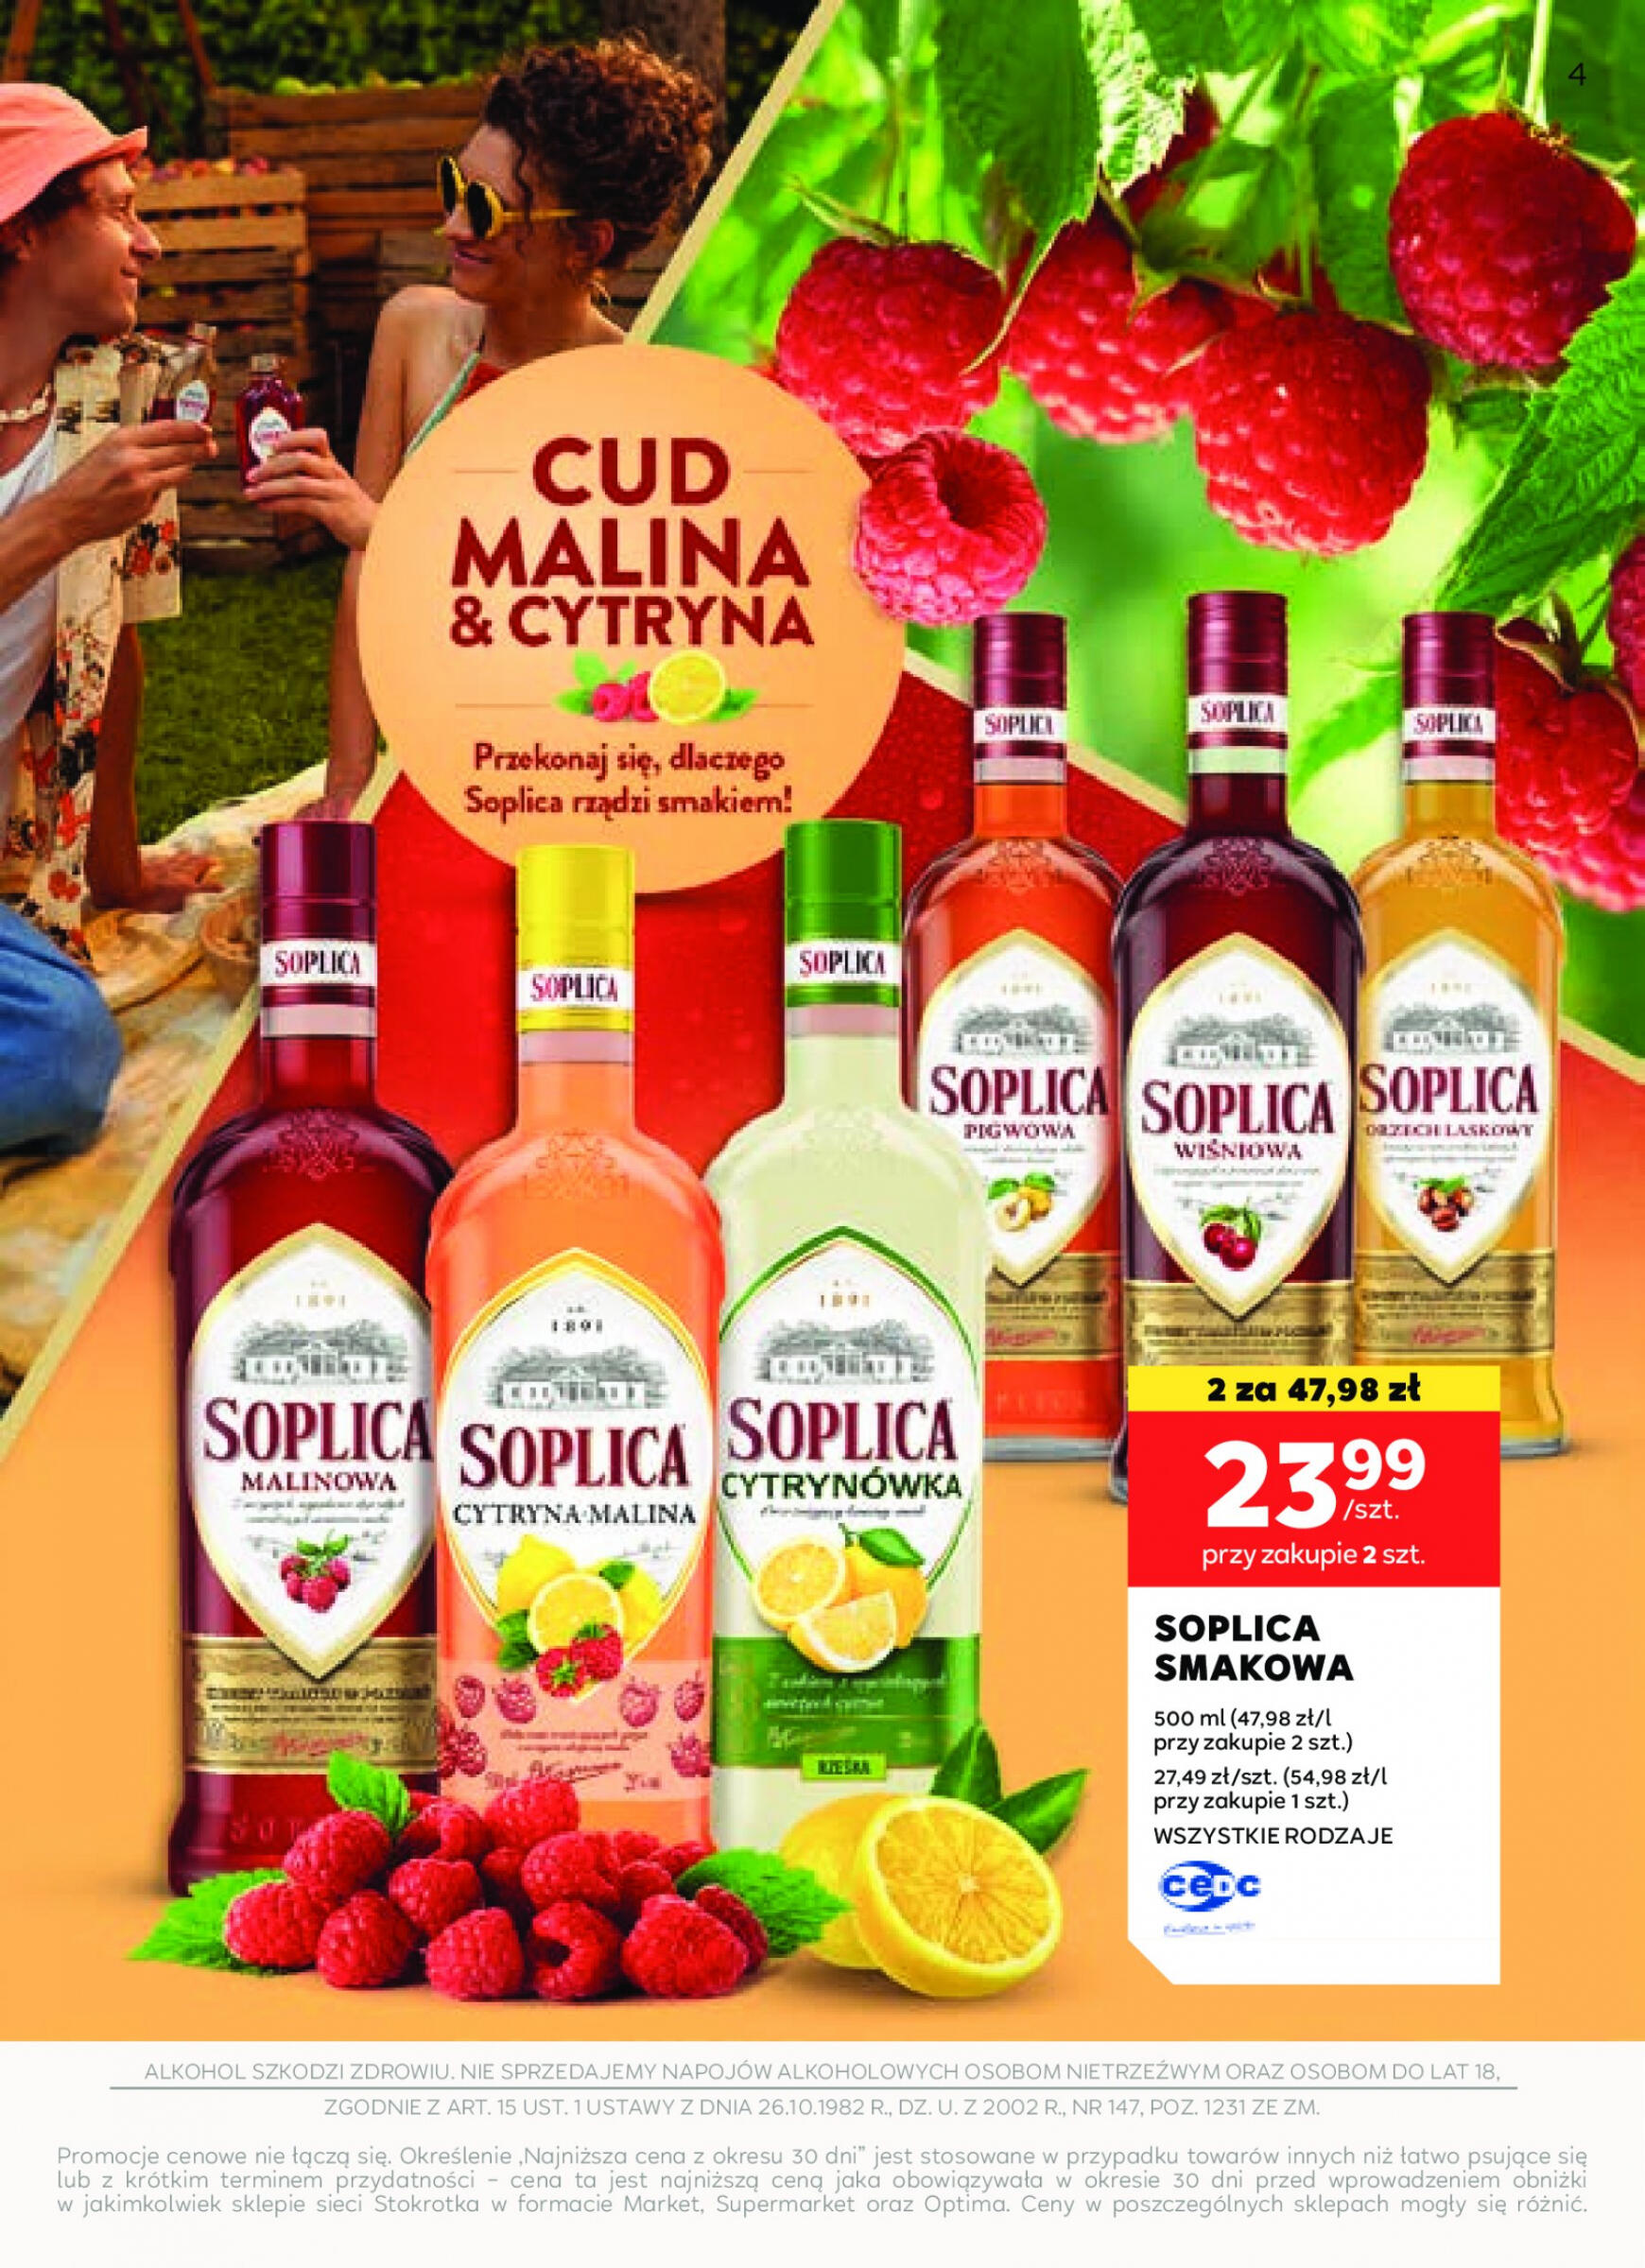 stokrotka - Stokrotka Supermarket - Oferta alkoholowa gazetka aktualna ważna od 25.04. - 22.05. - page: 4